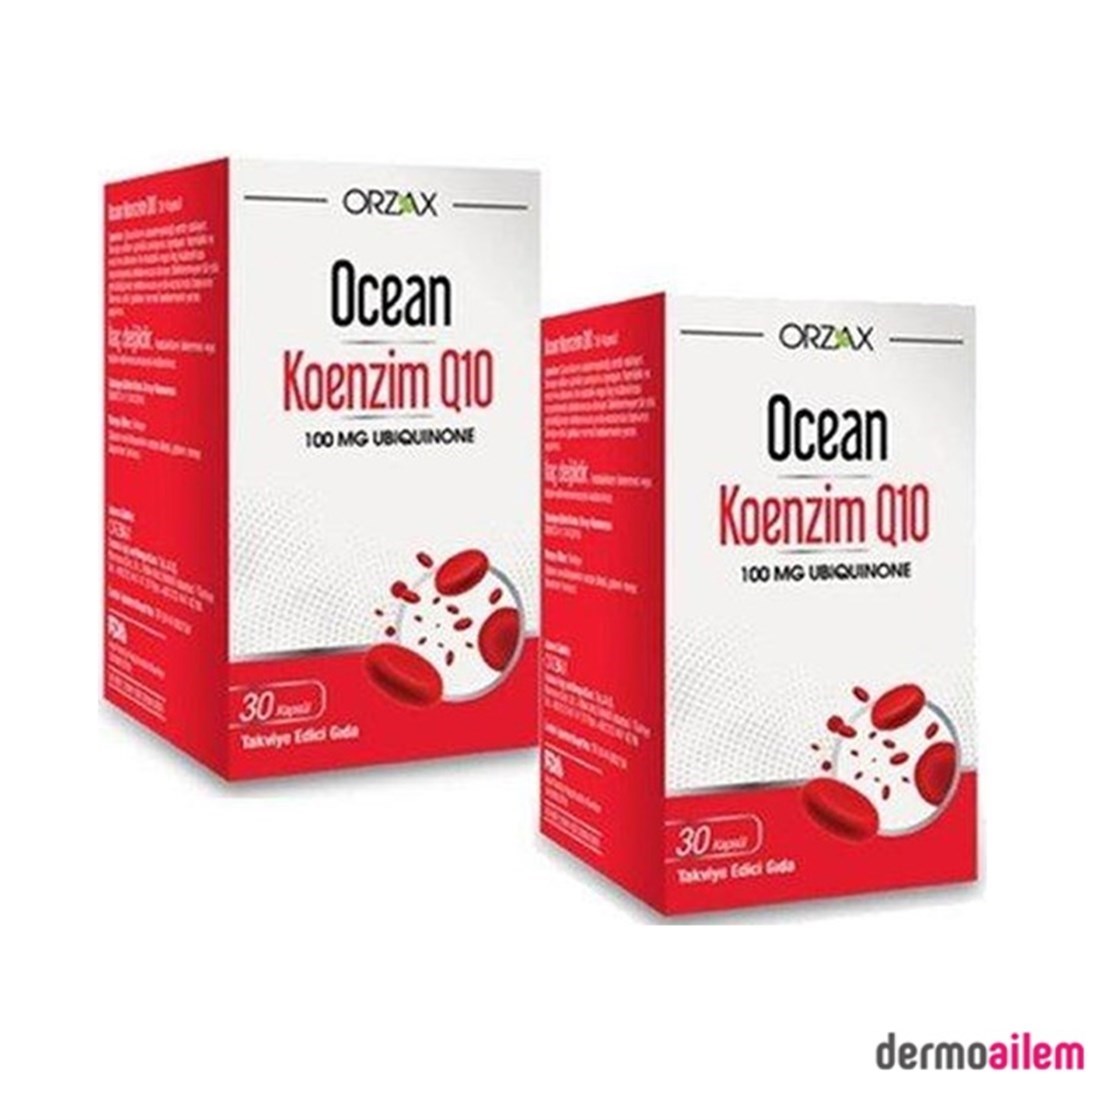 Ocean Koenzim Q10 100 mg 2'li Paket 30 Kapsül